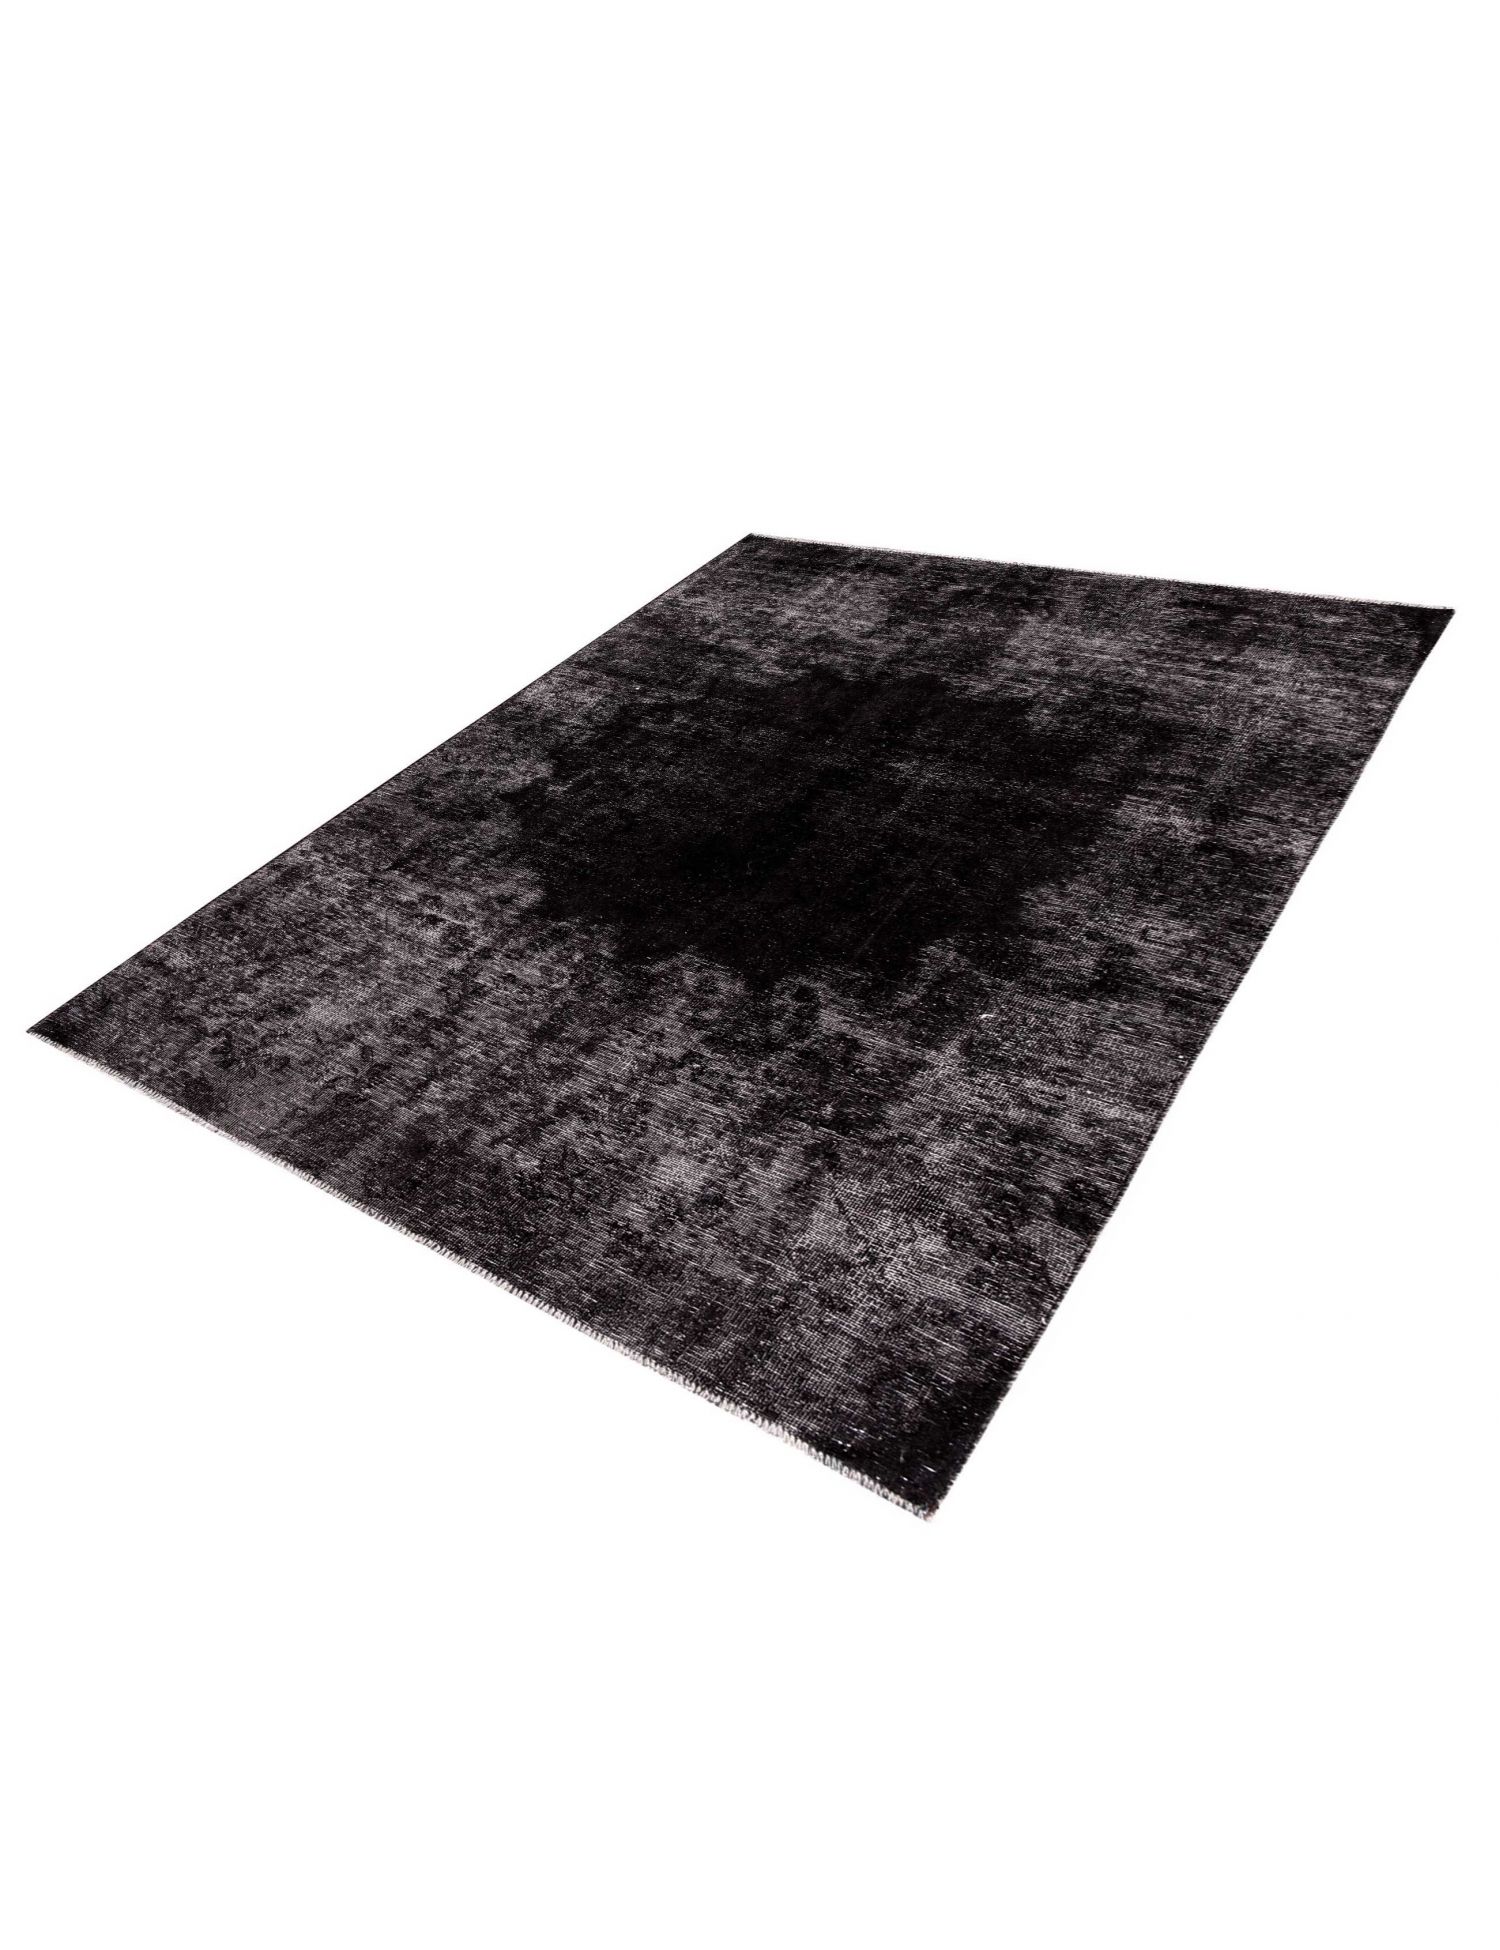 Persian Vintage Carpet  black <br/>198 x 138 cm